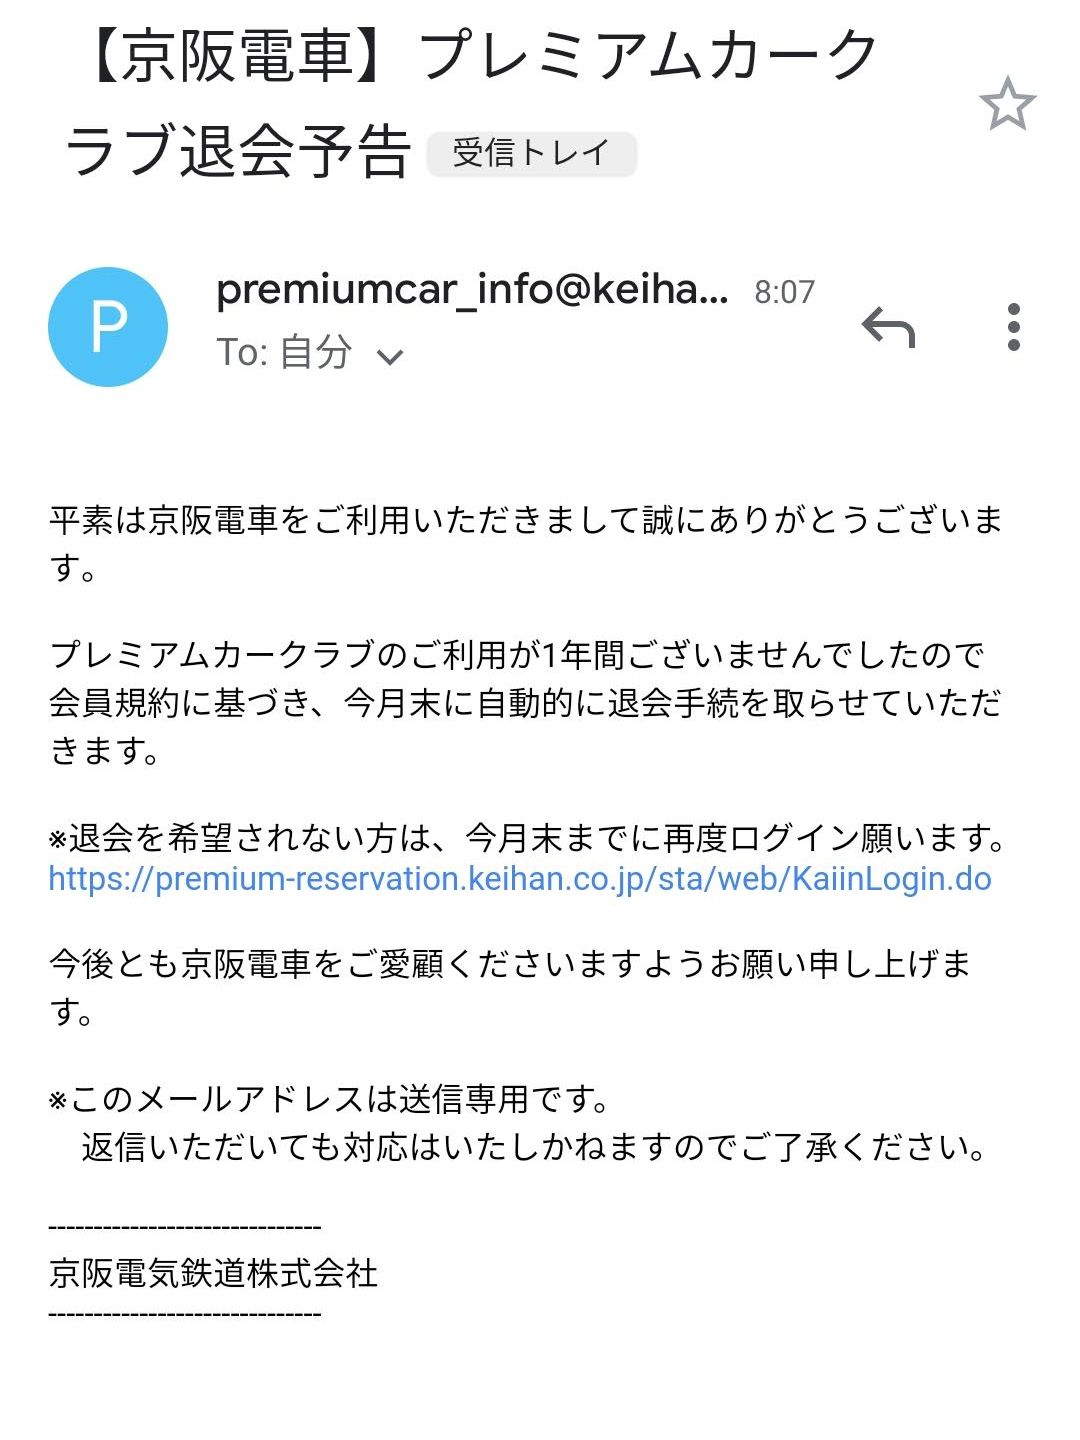 プレミアムカークラブ退会予告